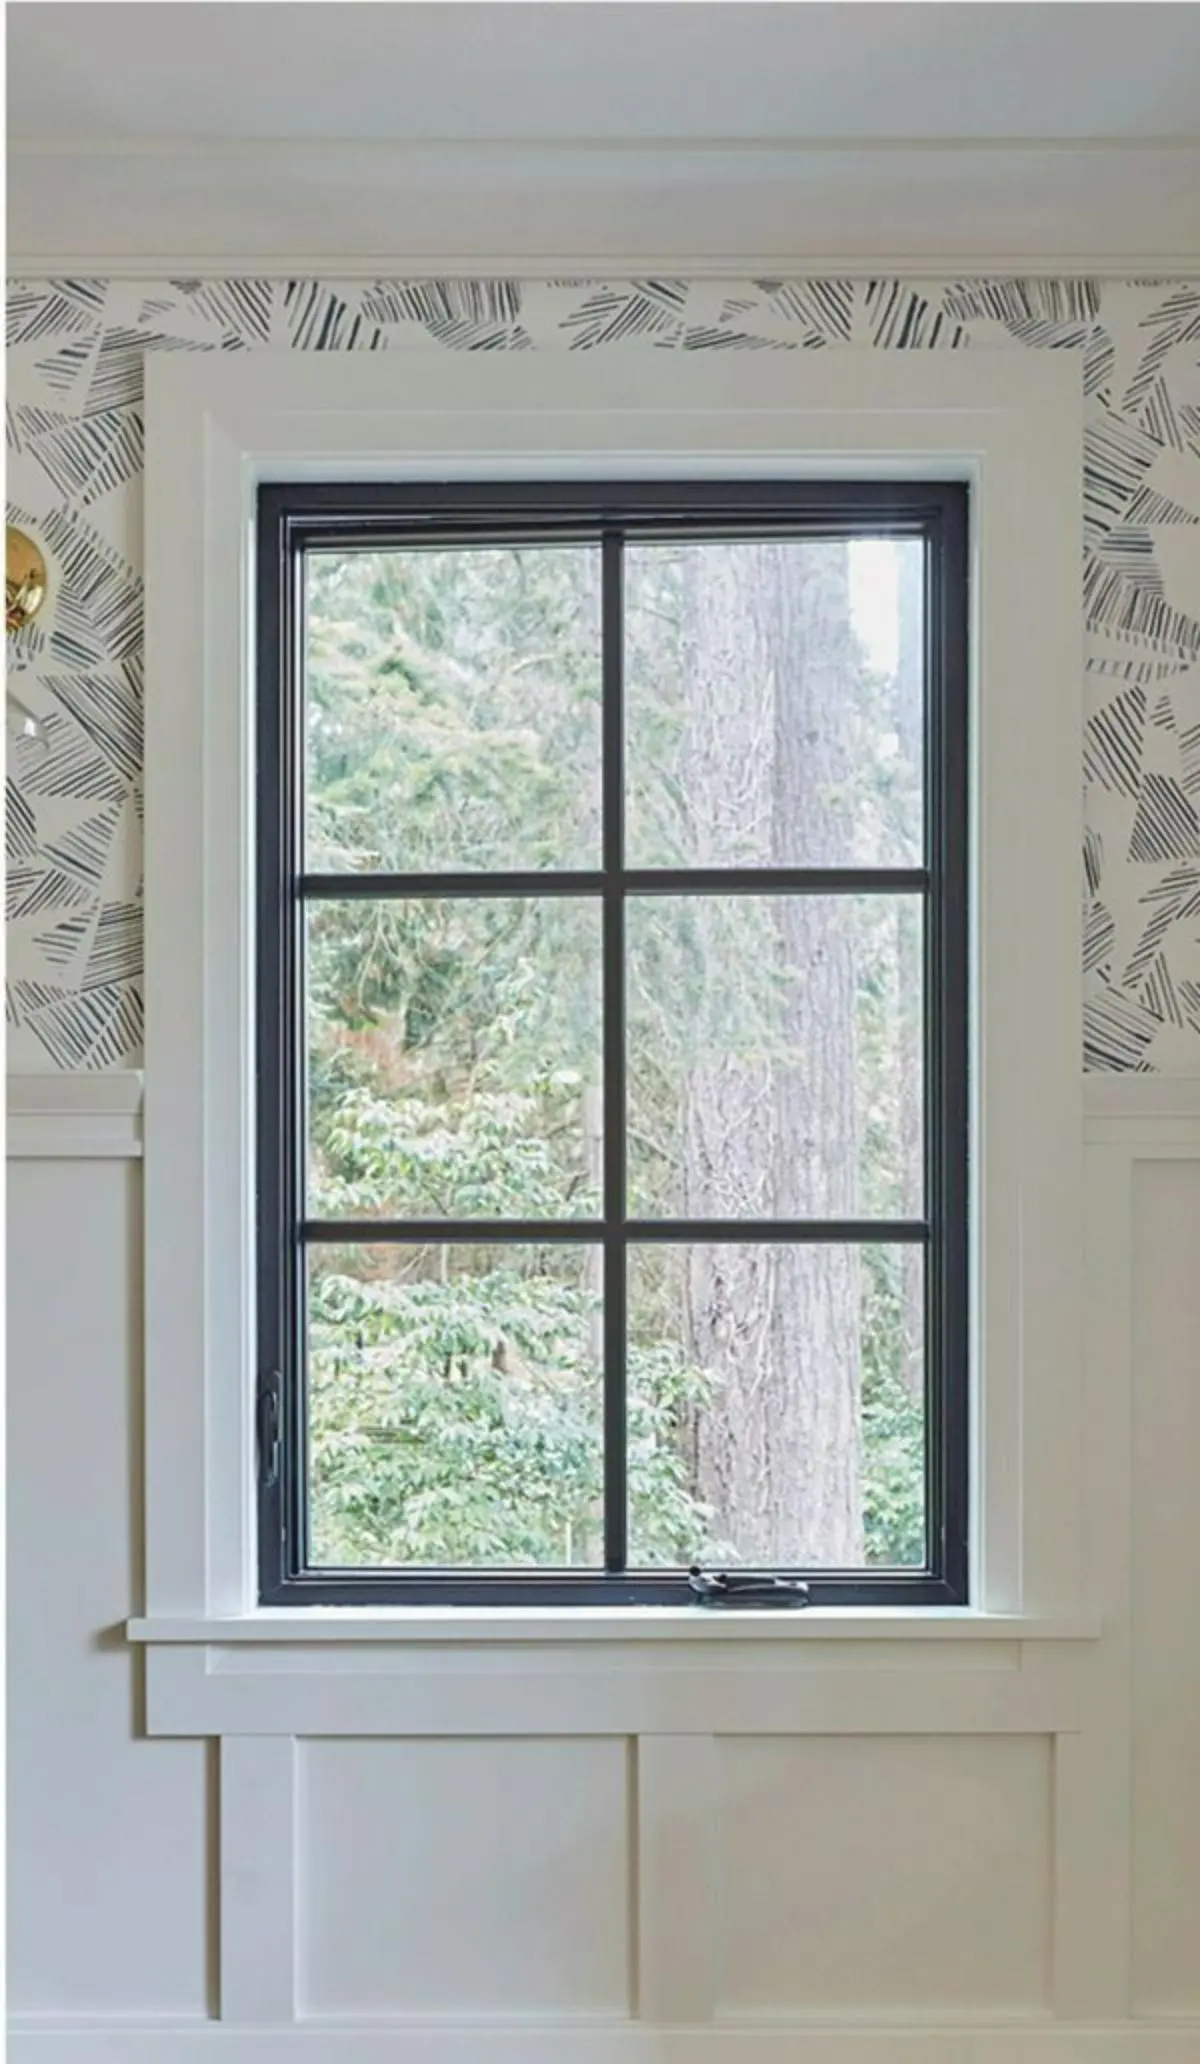 پنجره دوجداره مشکی با کاغذدیواری سفیدمشکی